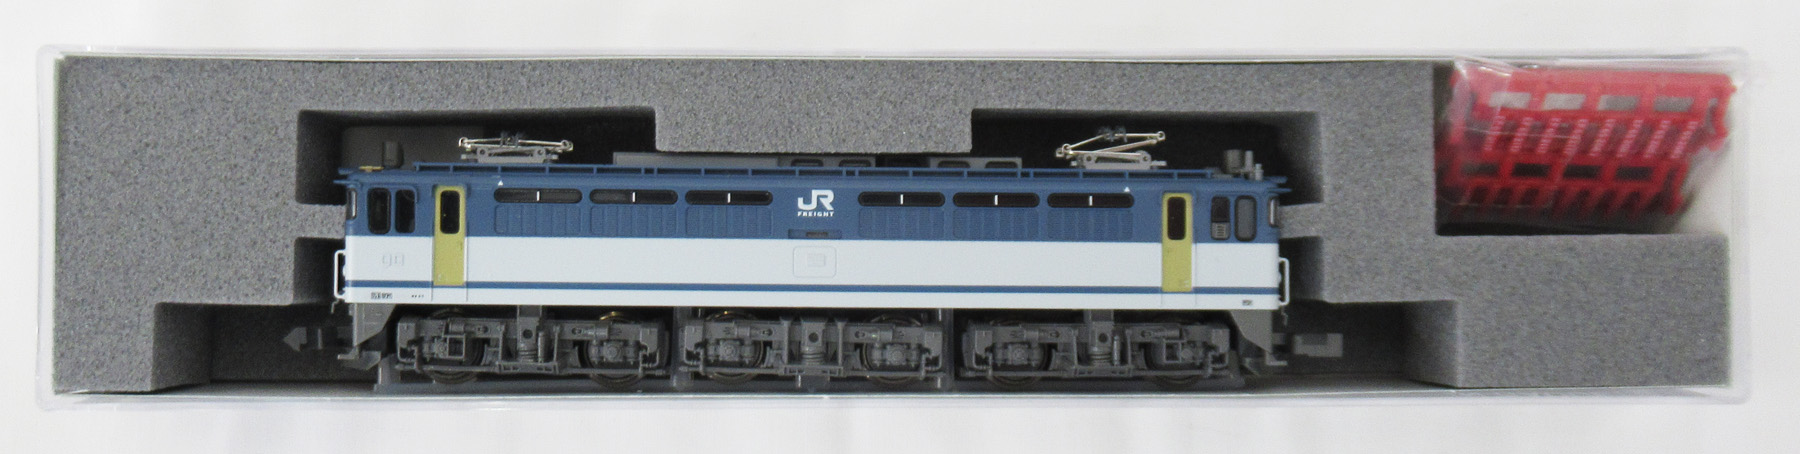 公式]鉄道模型(JR・国鉄 形式別(N)、電気機関車、EF65)カテゴリ 